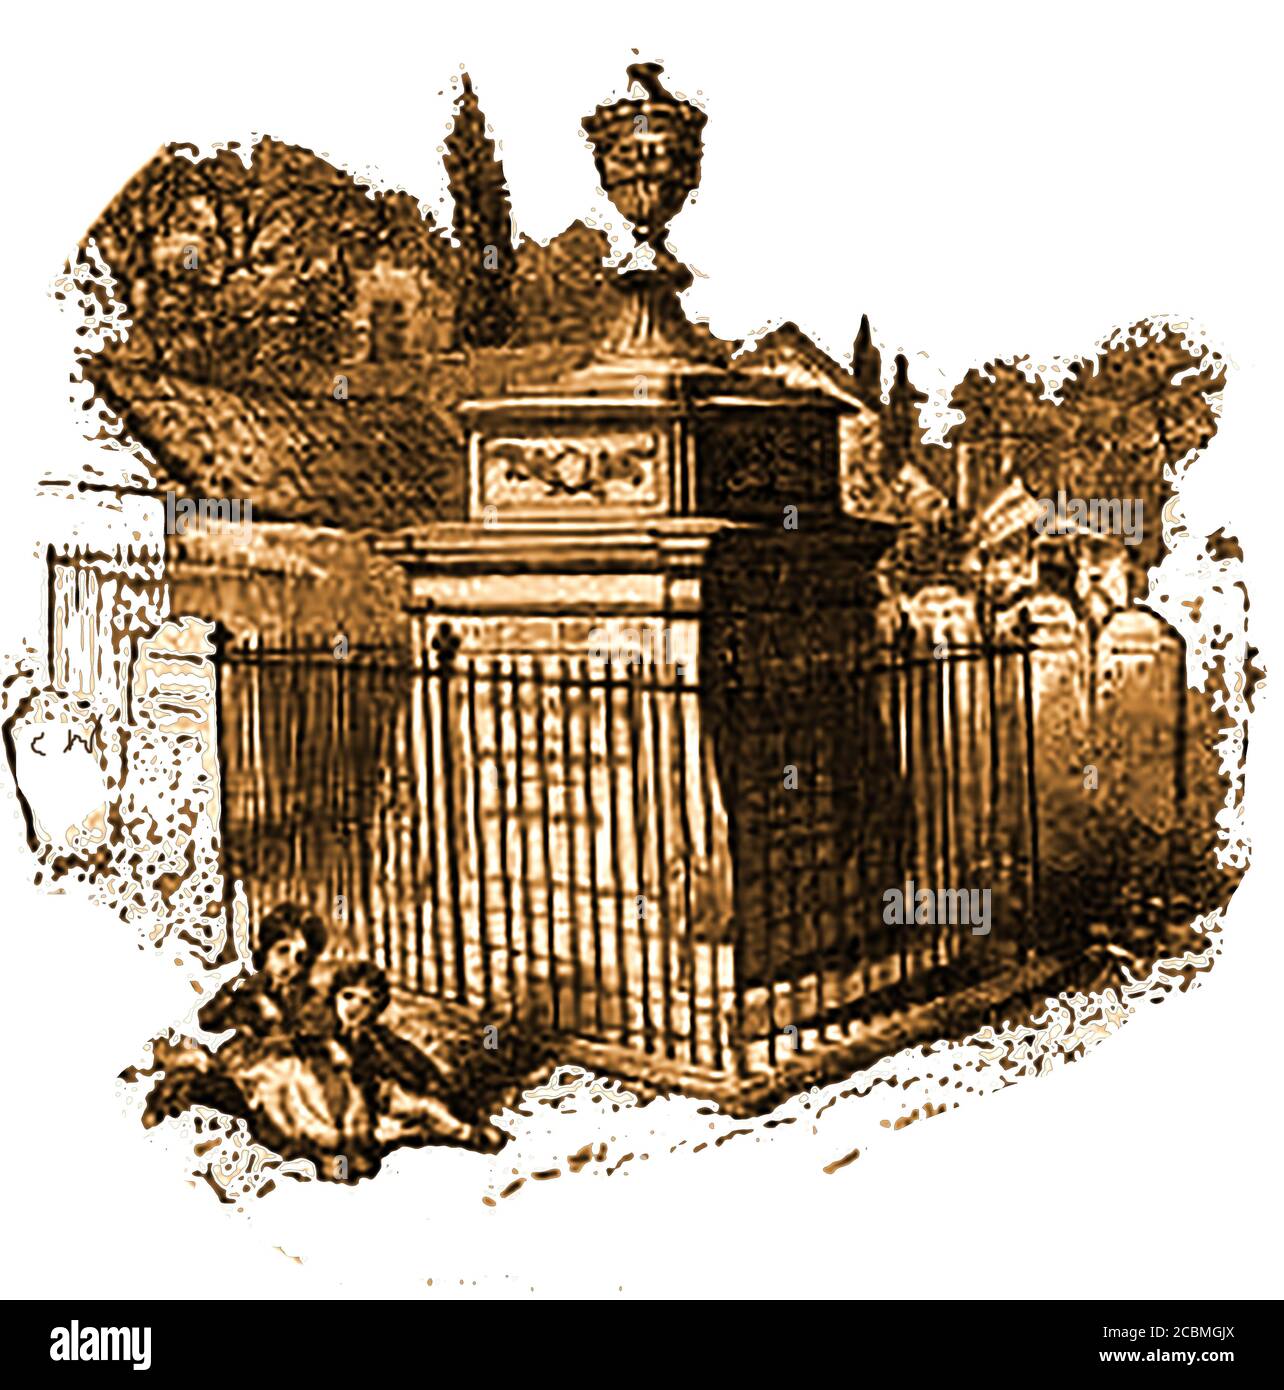 William Hogarth - sein Grab in Chiswick (St. Nicholas) Kirchhof, wie es in 1852 war. Hogarth starb am 25. Oktober 1764 im Alter von 66 Jahren.Grab, das 2010 restauriert wurde und eine Tafel mit einem Epitaph zu Hogarth enthält, komponiert von seinem Freund, dem Schauspieler David Garrick. Hogarth war ein angesehener Künstler, Kupferstecher, Karikaturist und Druckgrafiker, der für seine satirischen Werke gut in Erinnerung ist. Er war Schirmherr vieler Wohltätigkeitsorganisationen und er und seine Frau förderten die Kinder der Findling, als Förderer des Foundling Hospital in London. Das Paar hatte keine eigenen Kinder. Stockfoto